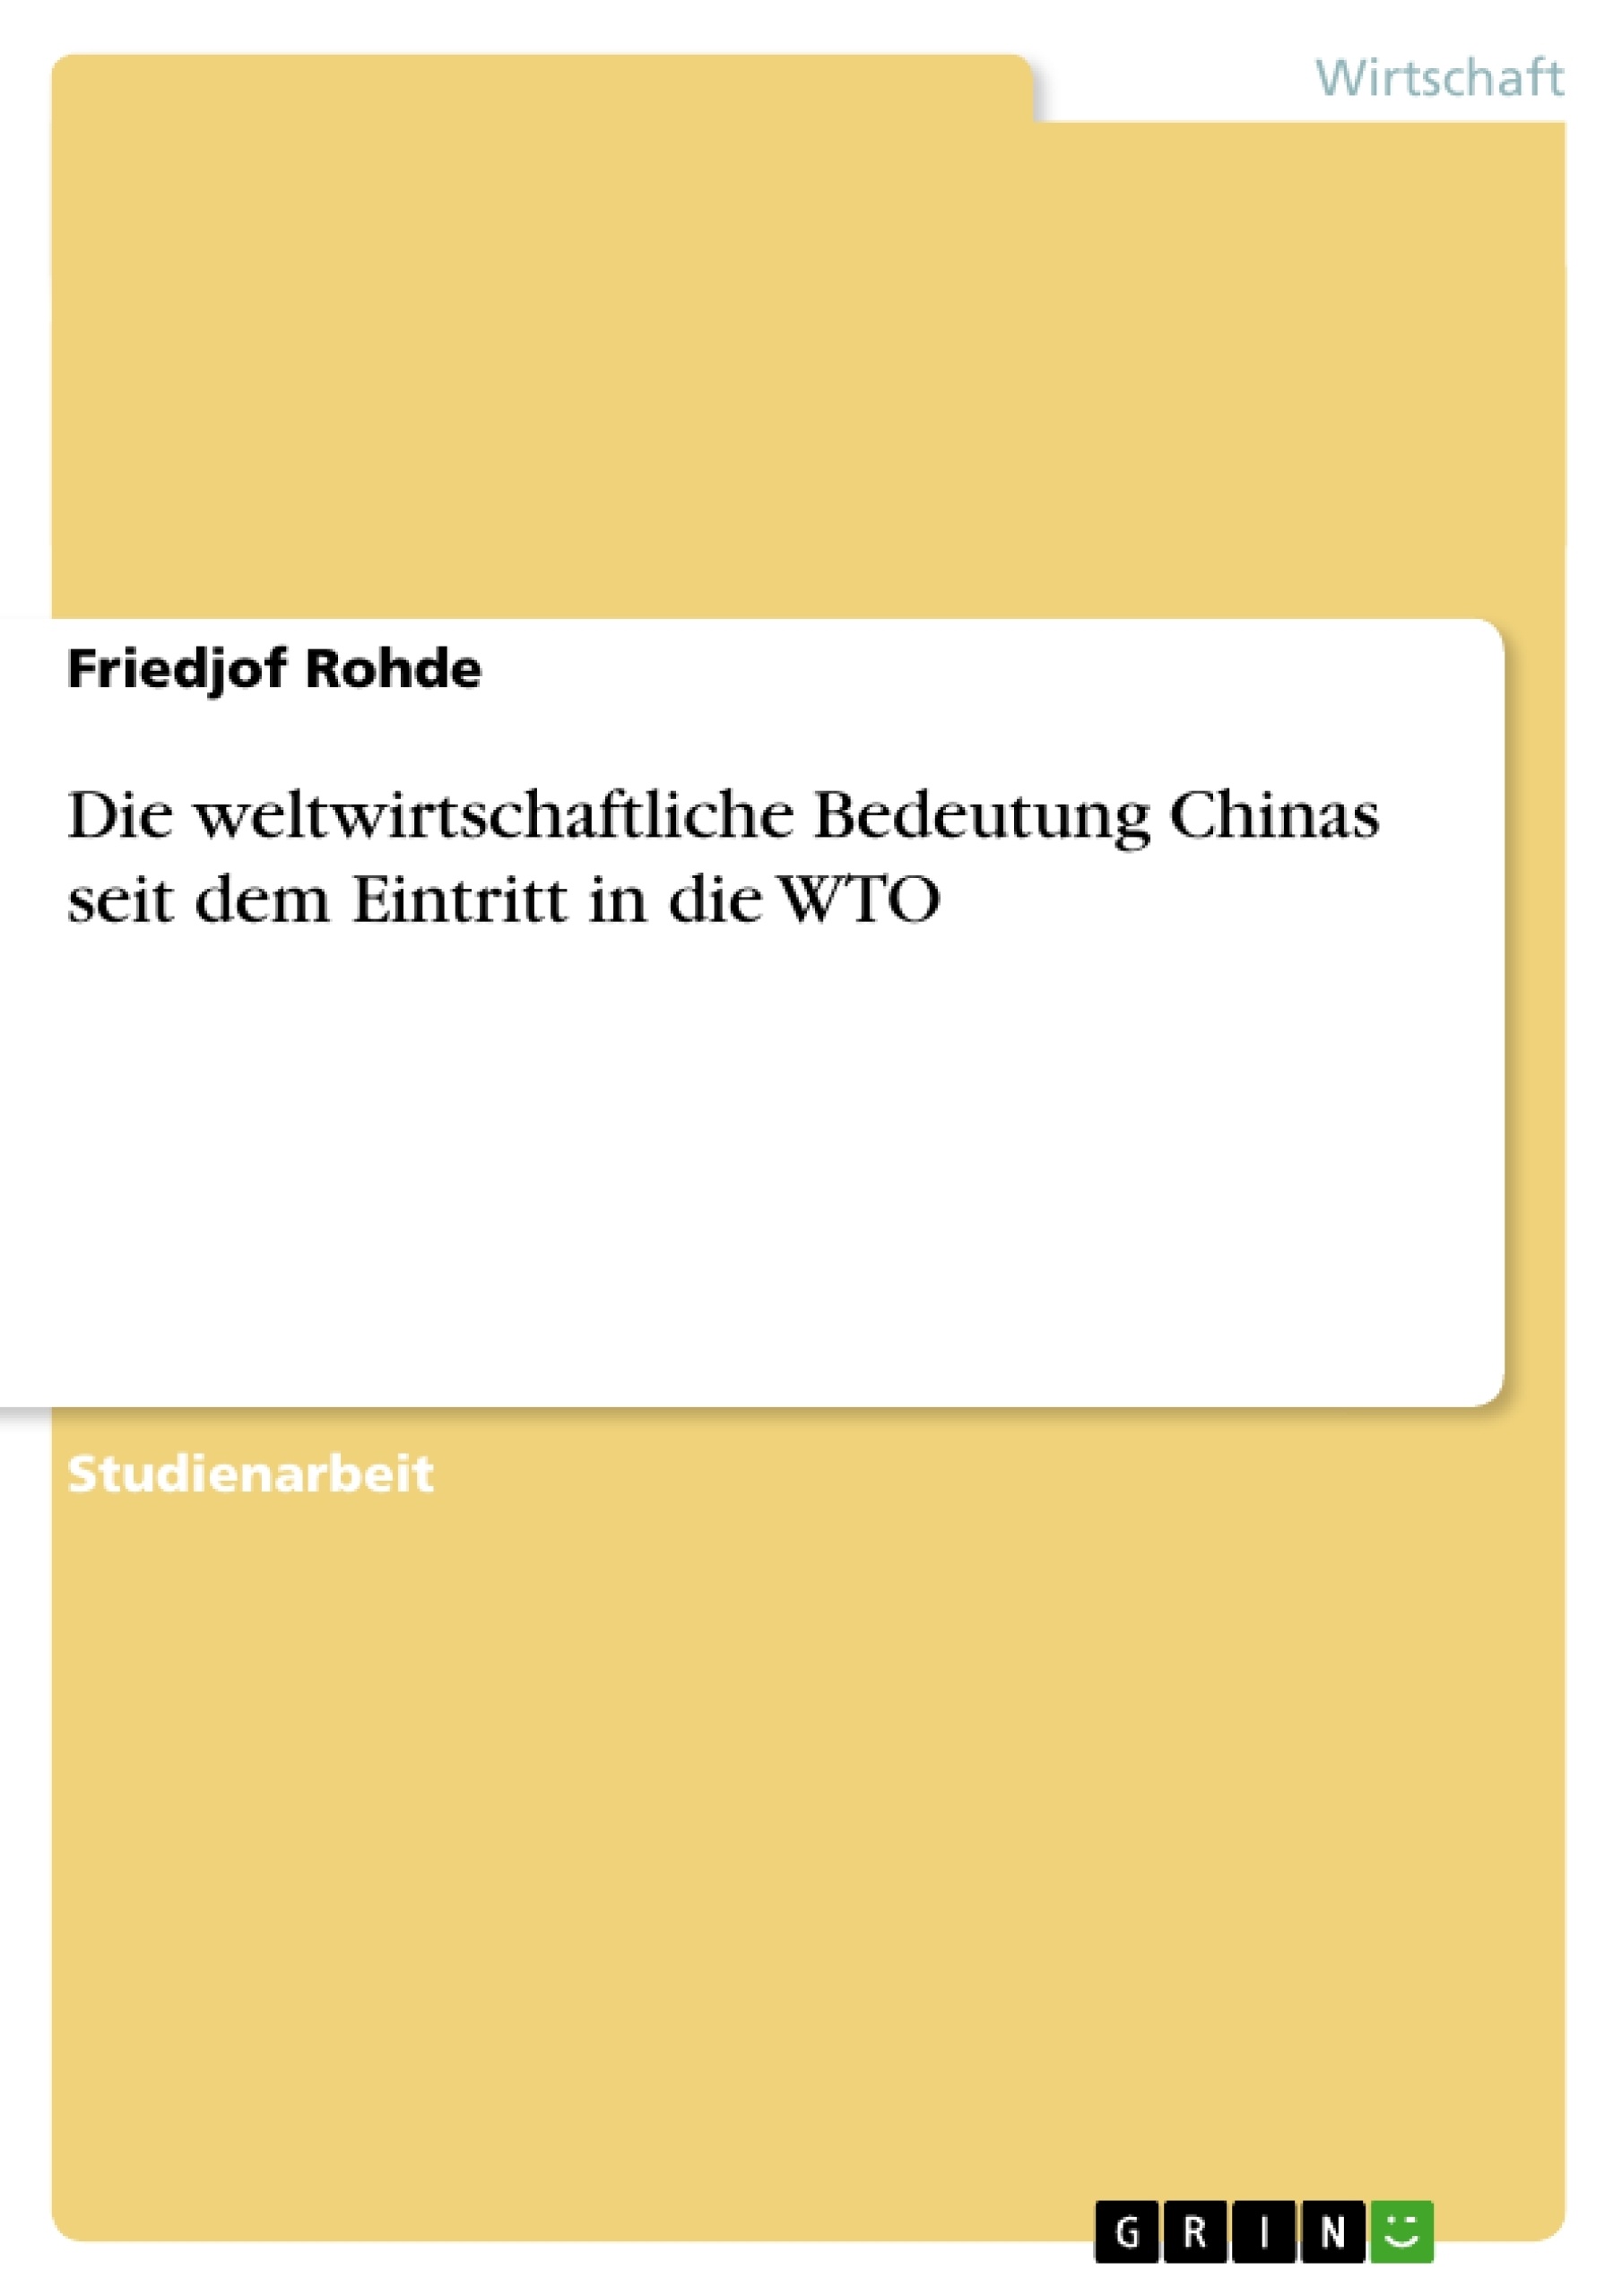 Titre: Die weltwirtschaftliche Bedeutung Chinas seit dem Eintritt in die WTO